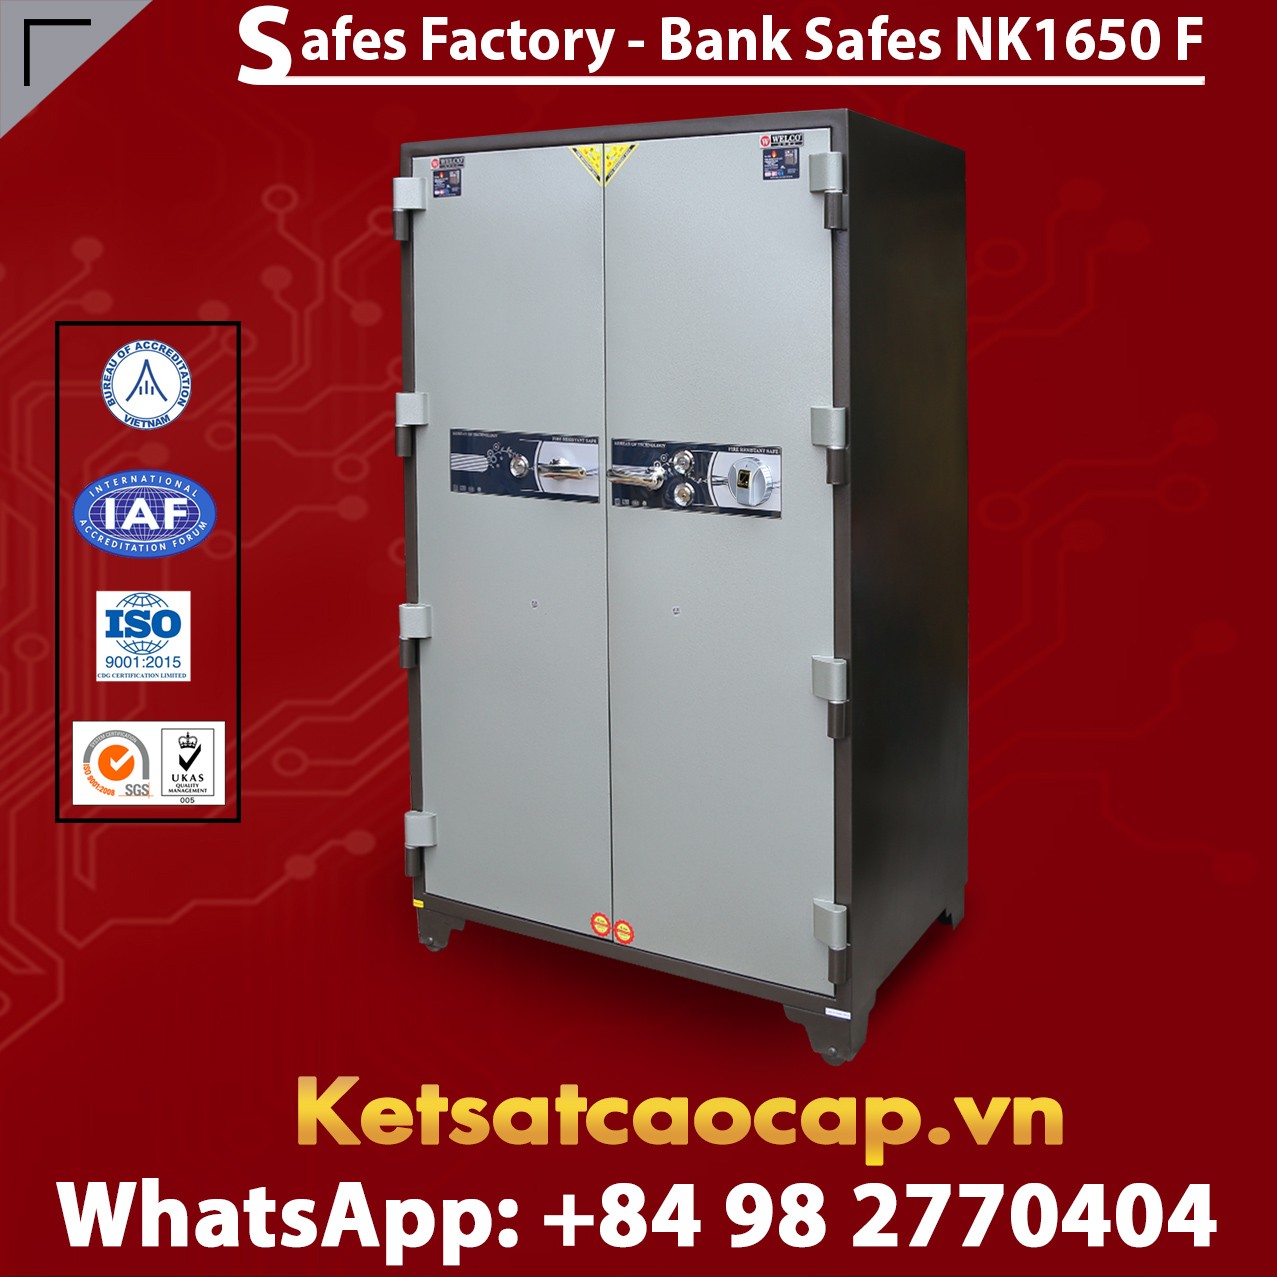 Bank Safe NK 1650 F Hot Sale Design - Modern Mechanical Locking System